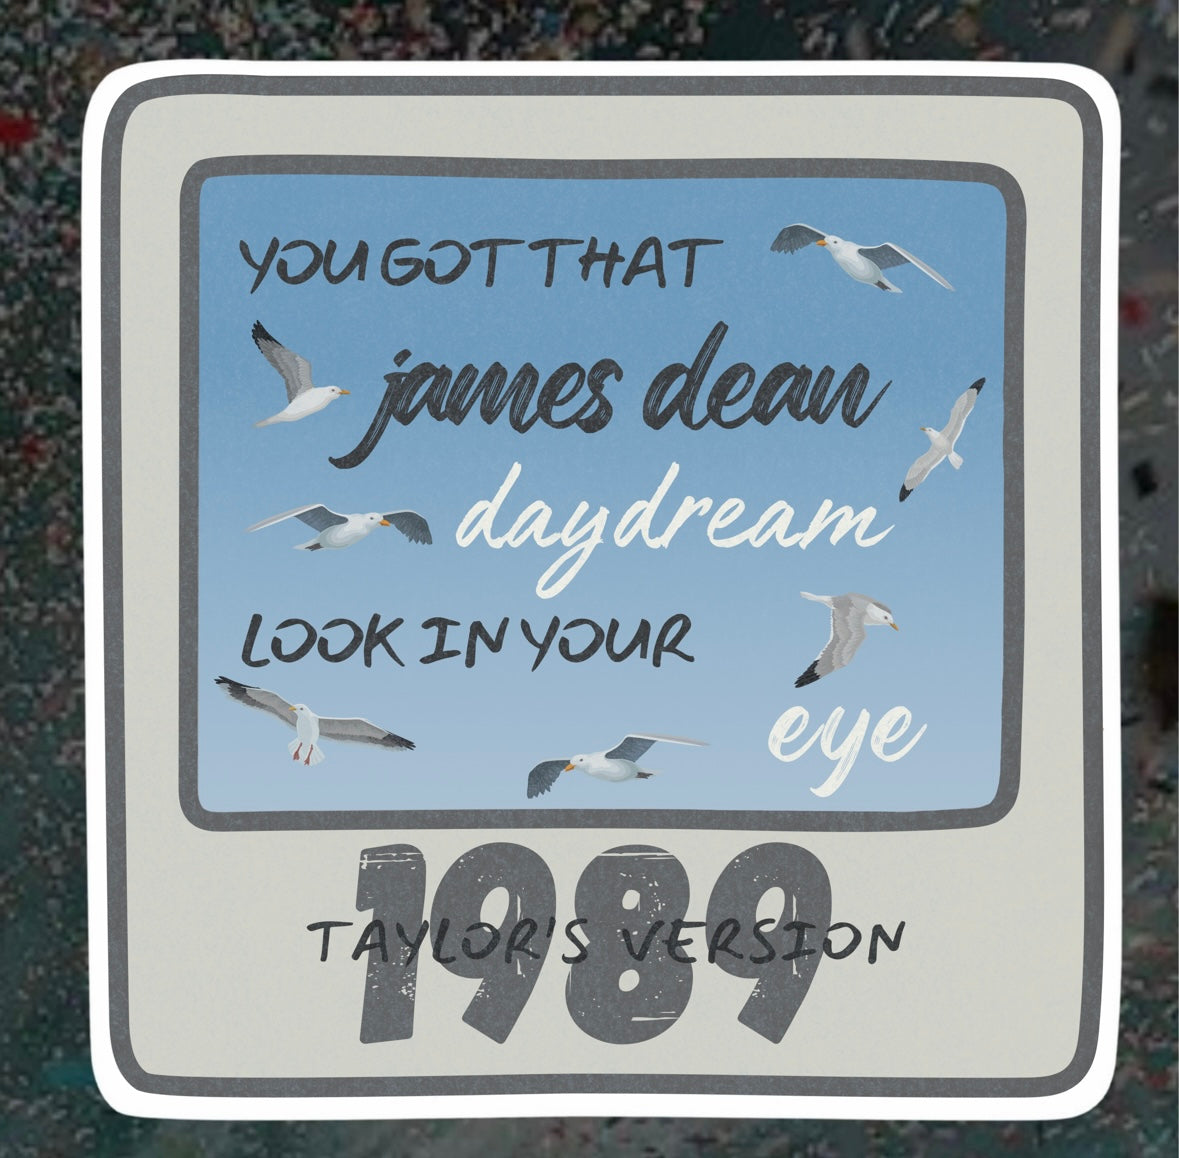 James Dean Daydream Sticker